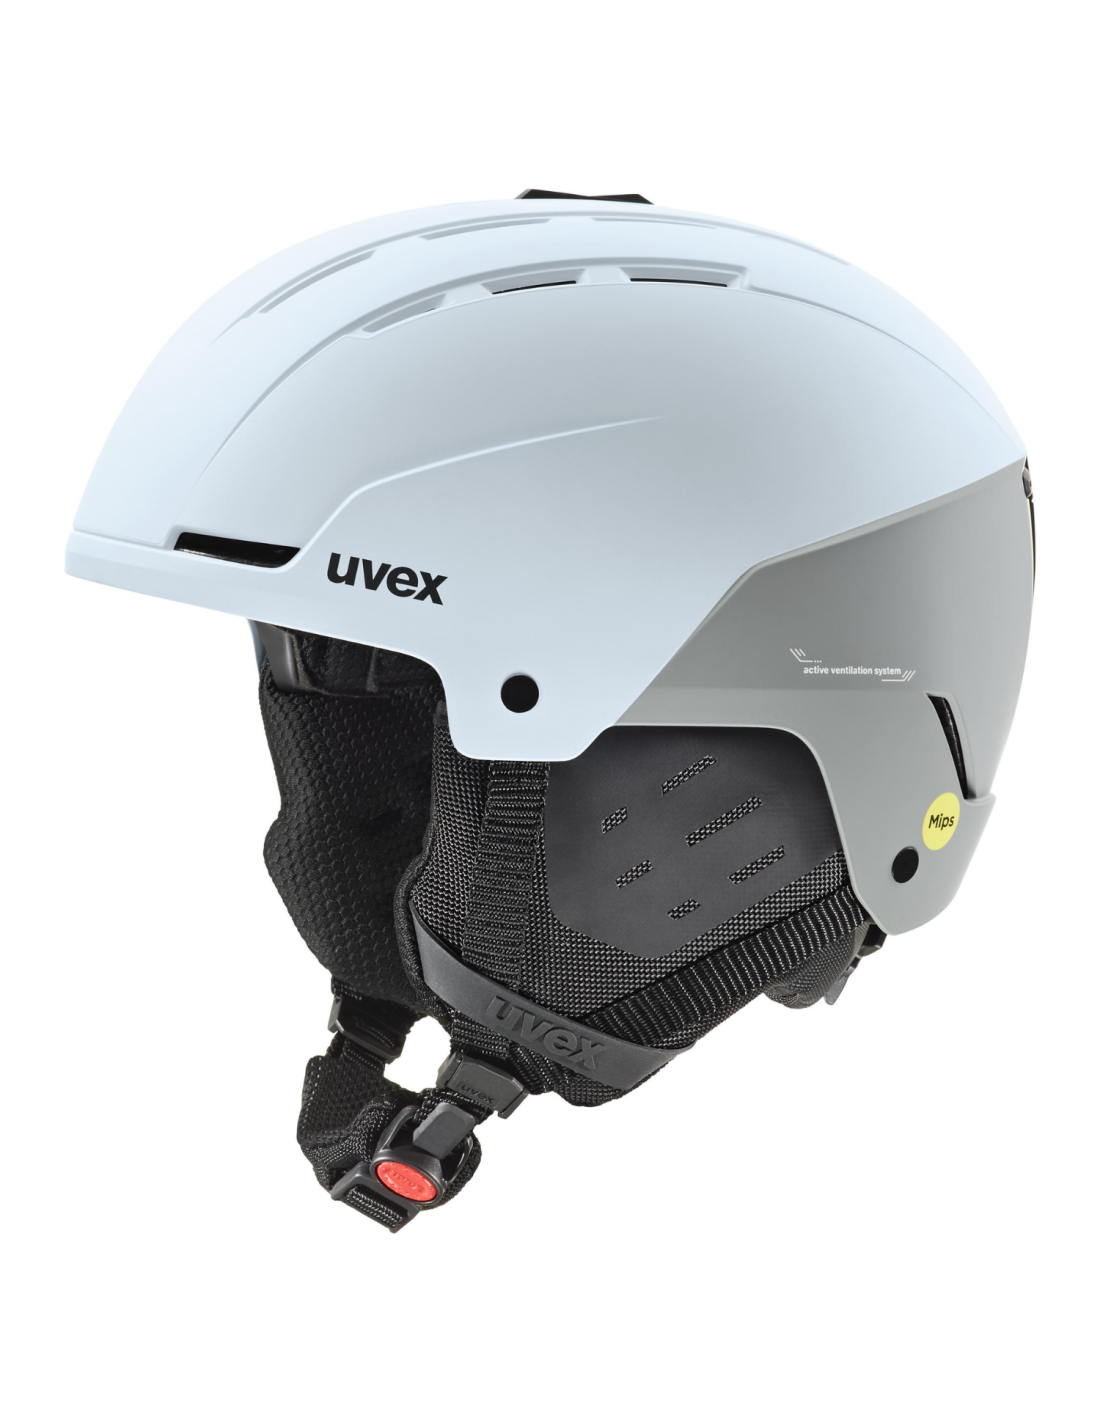 Uvex, due nuovi caschi con visore per l'inverno 2021/2022